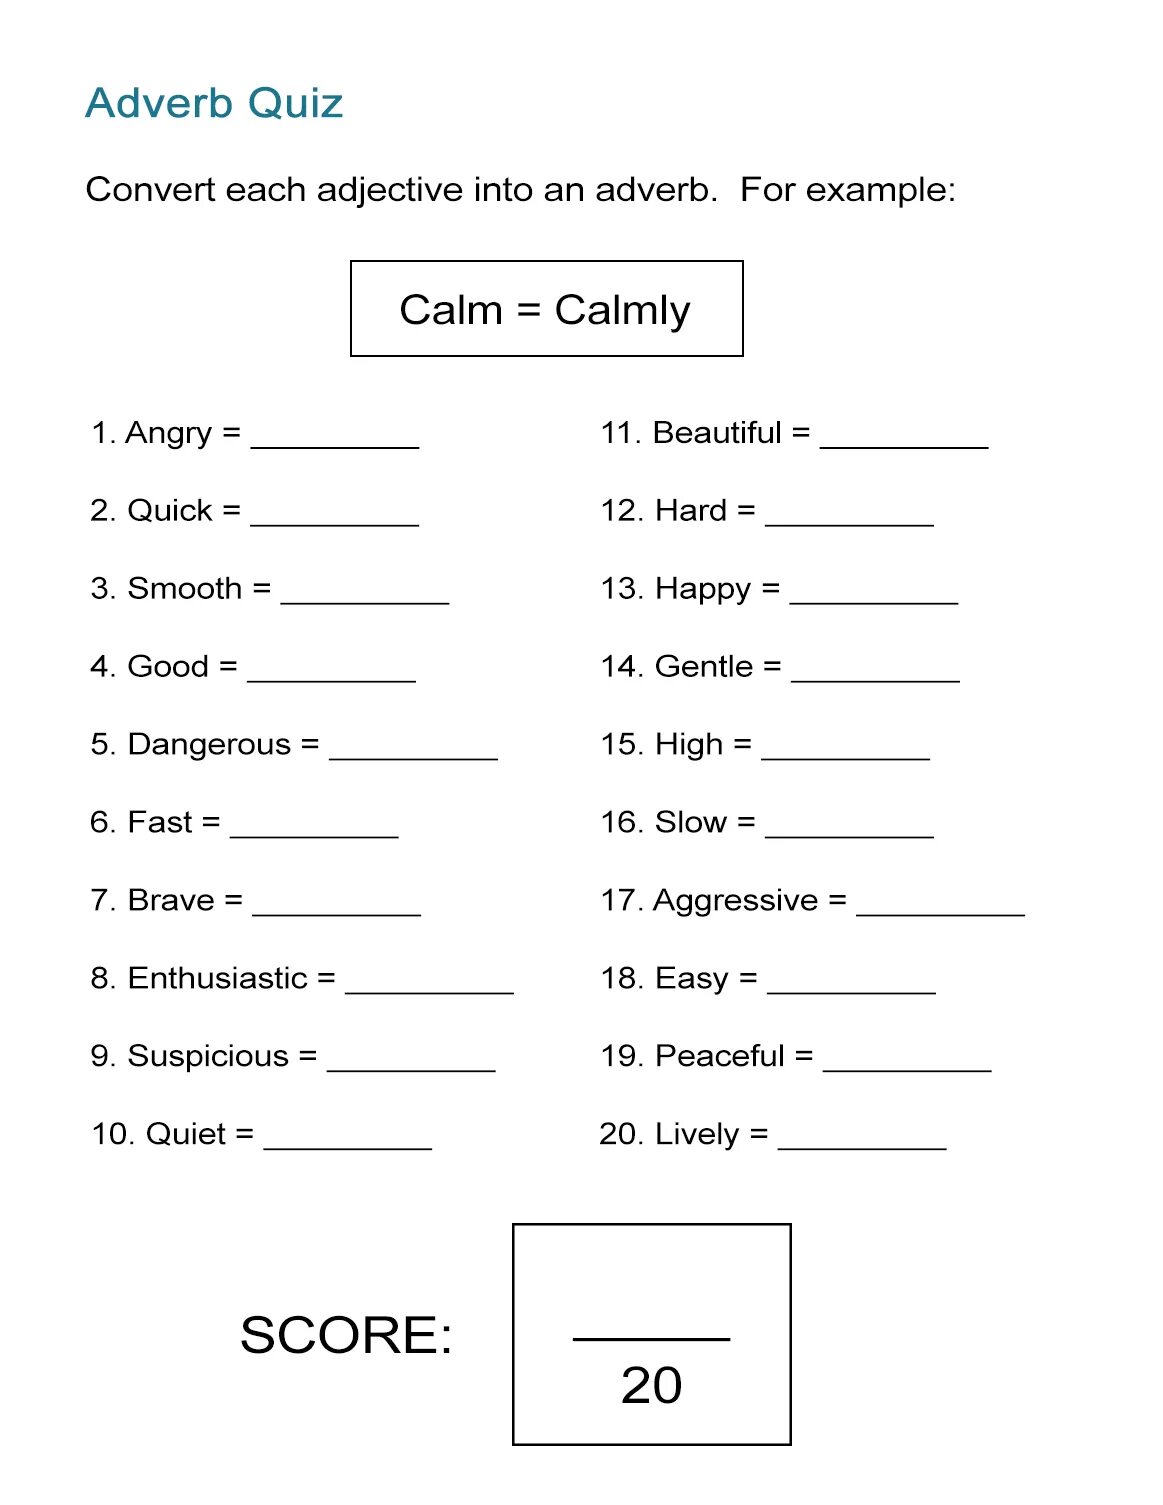 Adverbs упражнения. Наречия в английском языке Worksheets. Наречия в английском задания. Наречия Worksheets. Образование наречий в английском языке Worksheets.